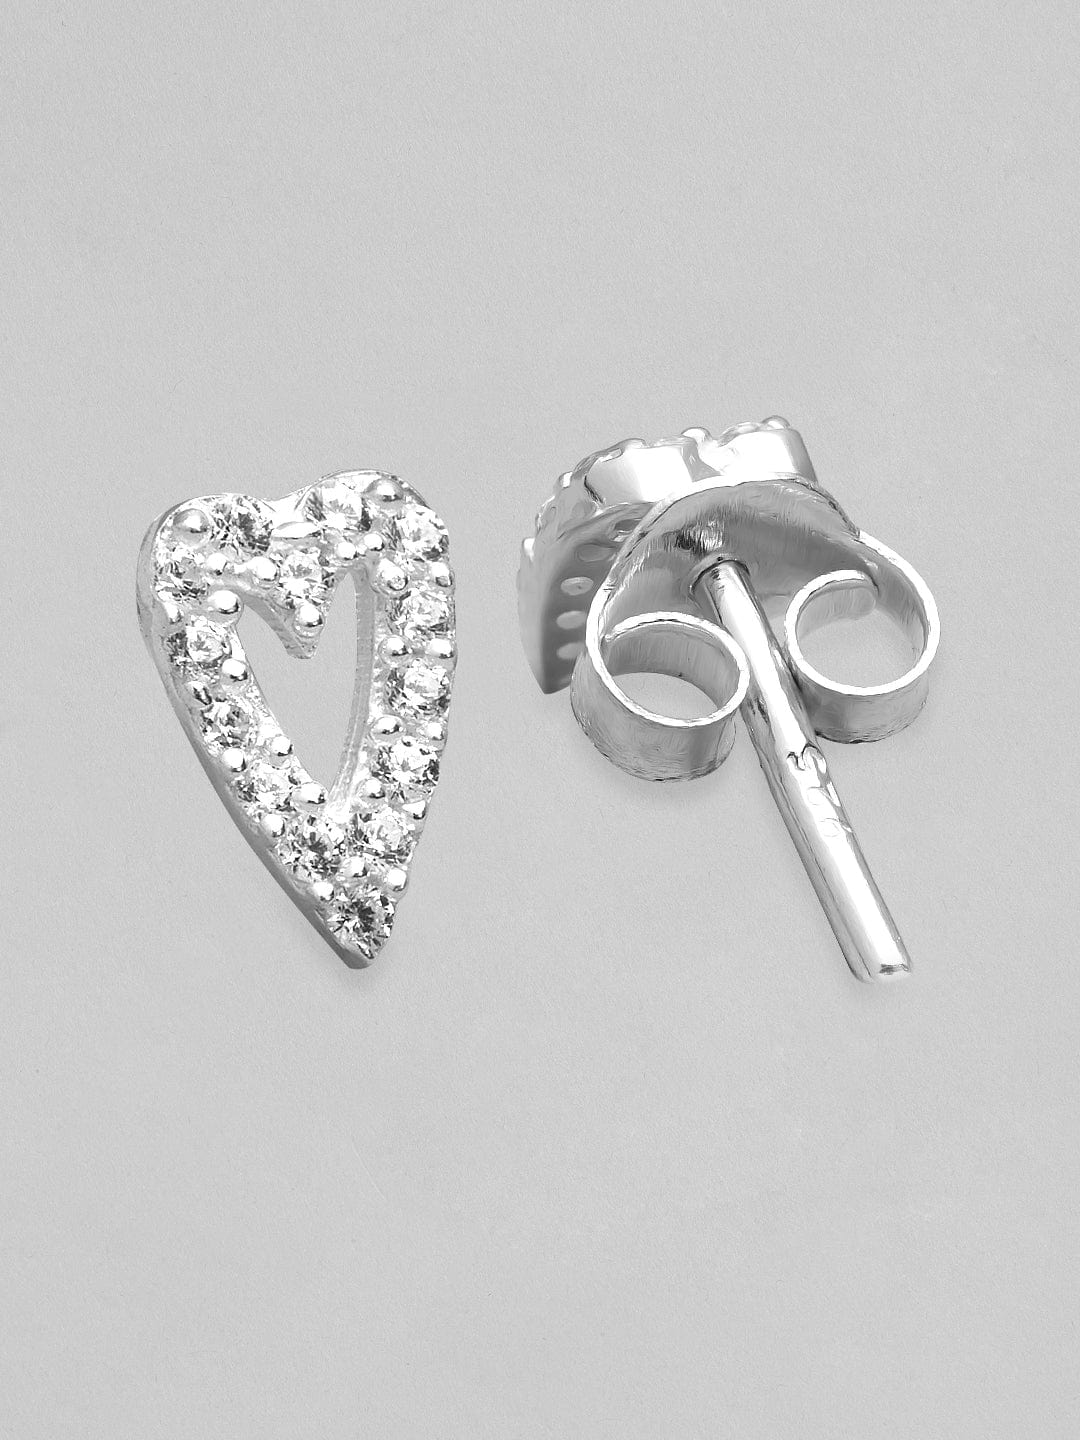 Rubans 925 Silver The Sparkling Silver Heart Stud Earrings. Earrings